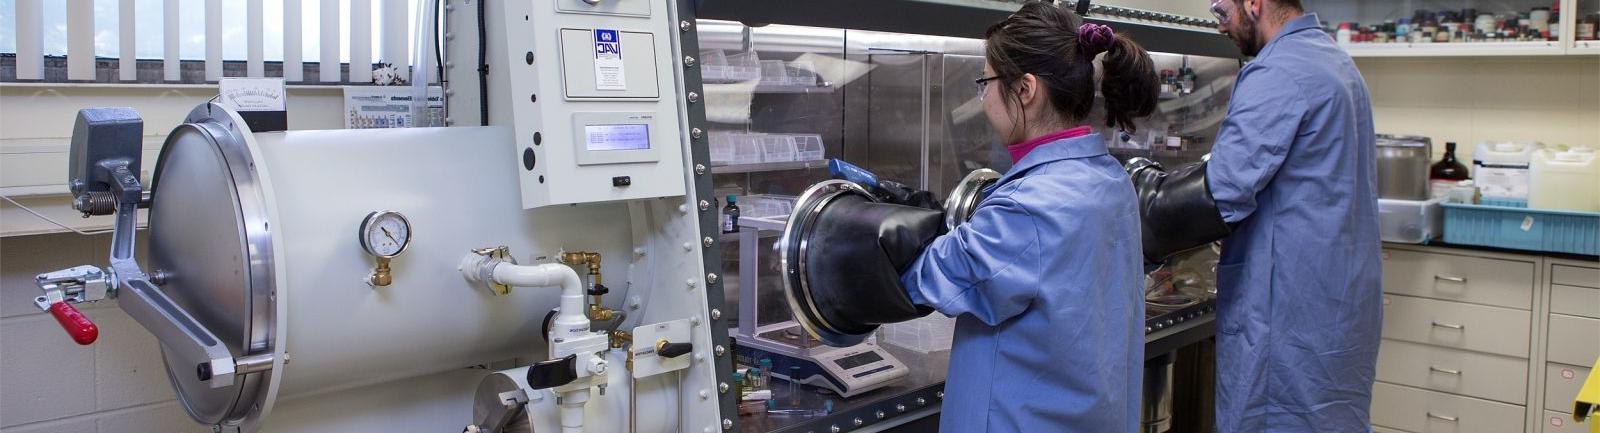 化学专业的学生在实验室里使用设备处理物质.